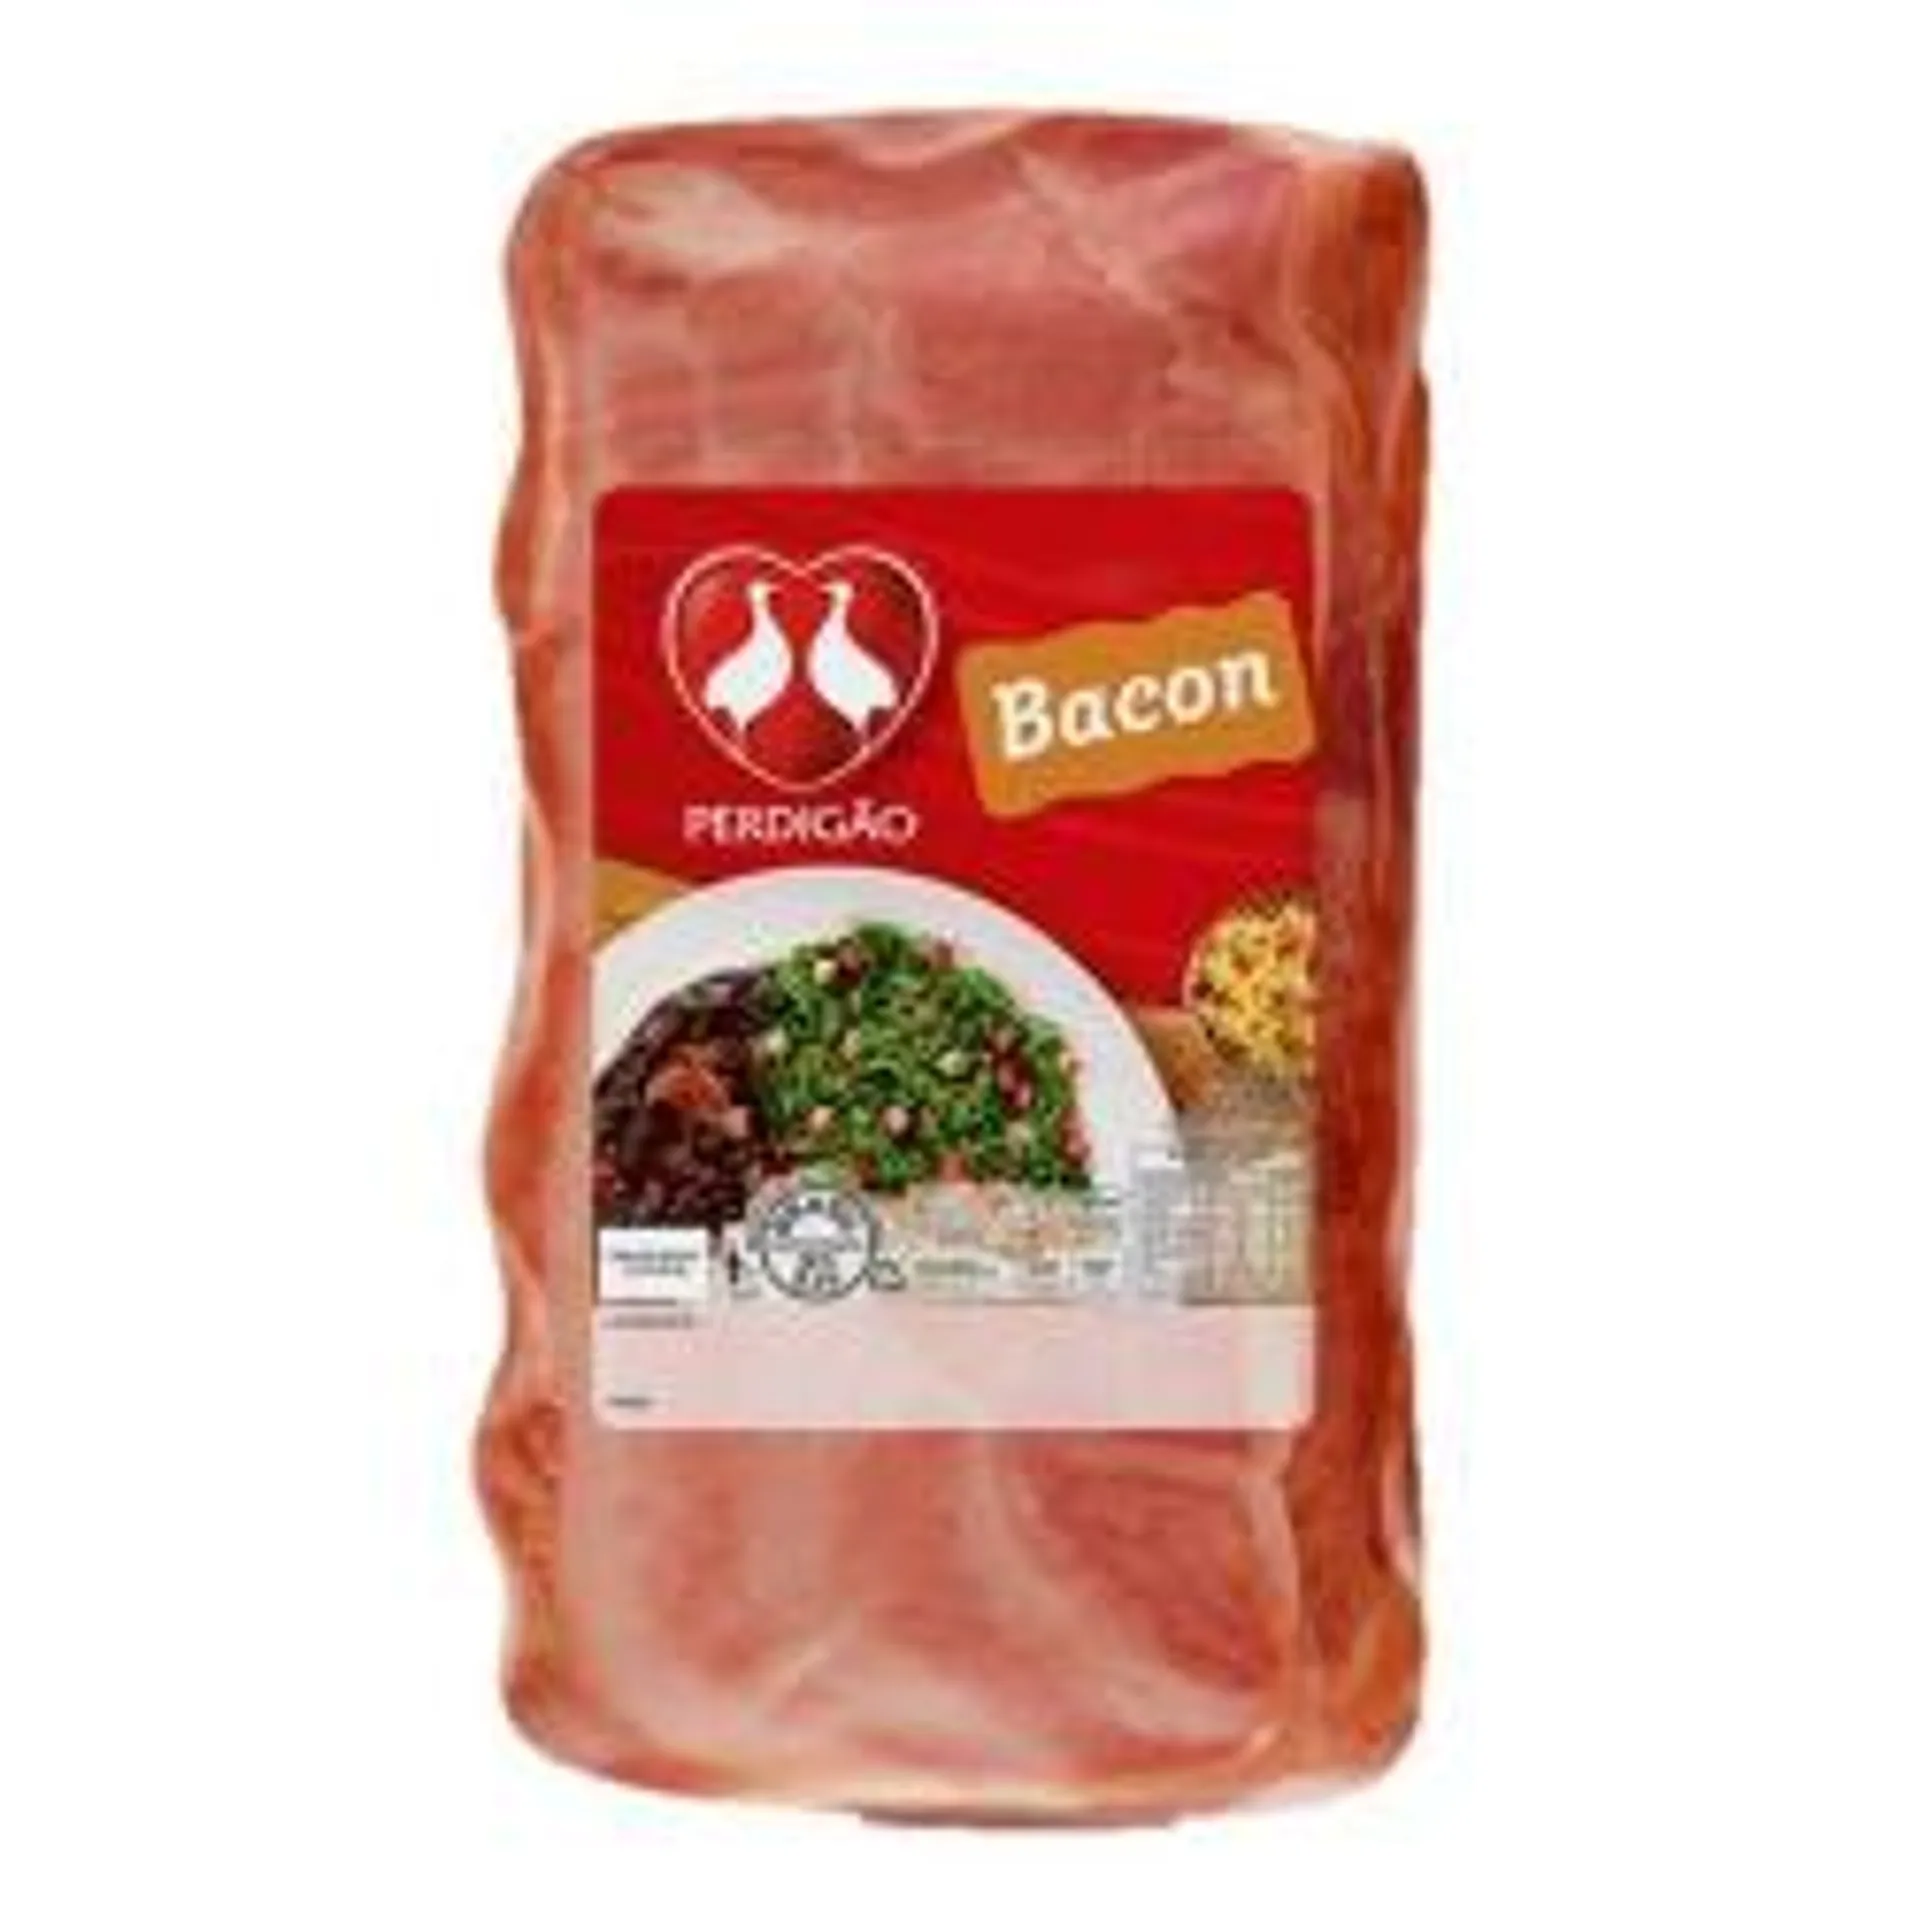 Bacon Defumado Perdigão Kg